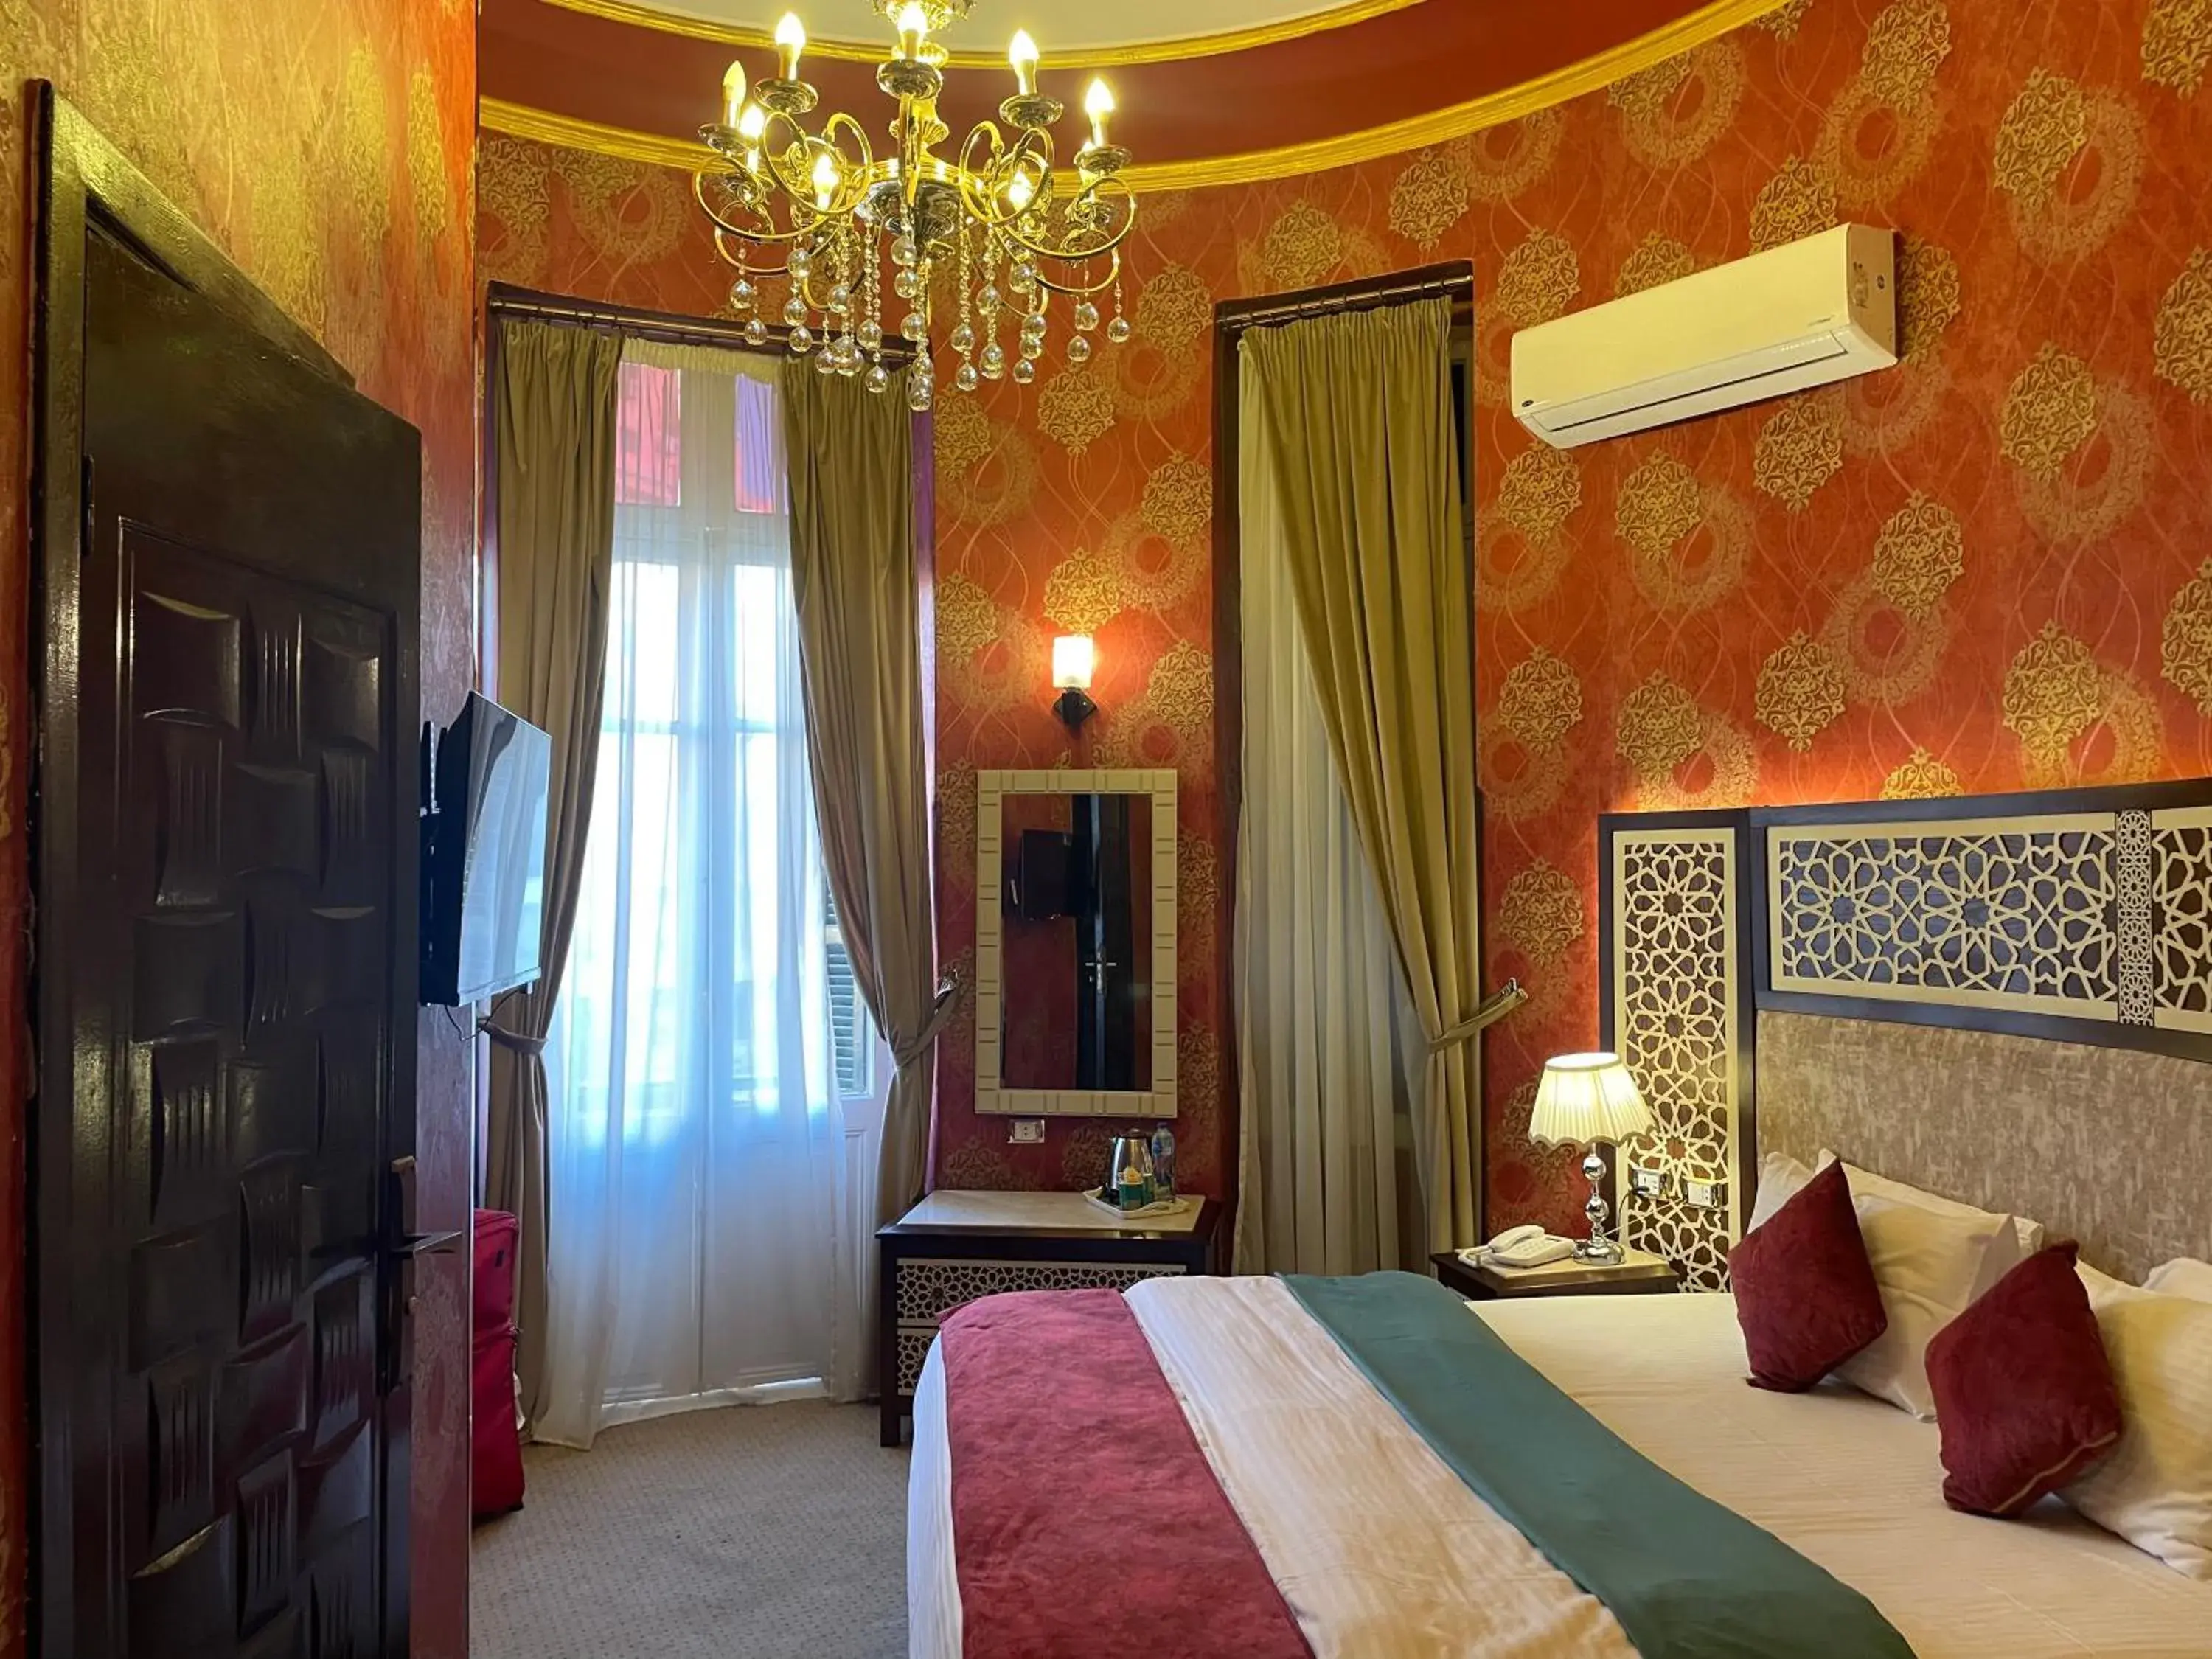 Bed in Cairo Inn